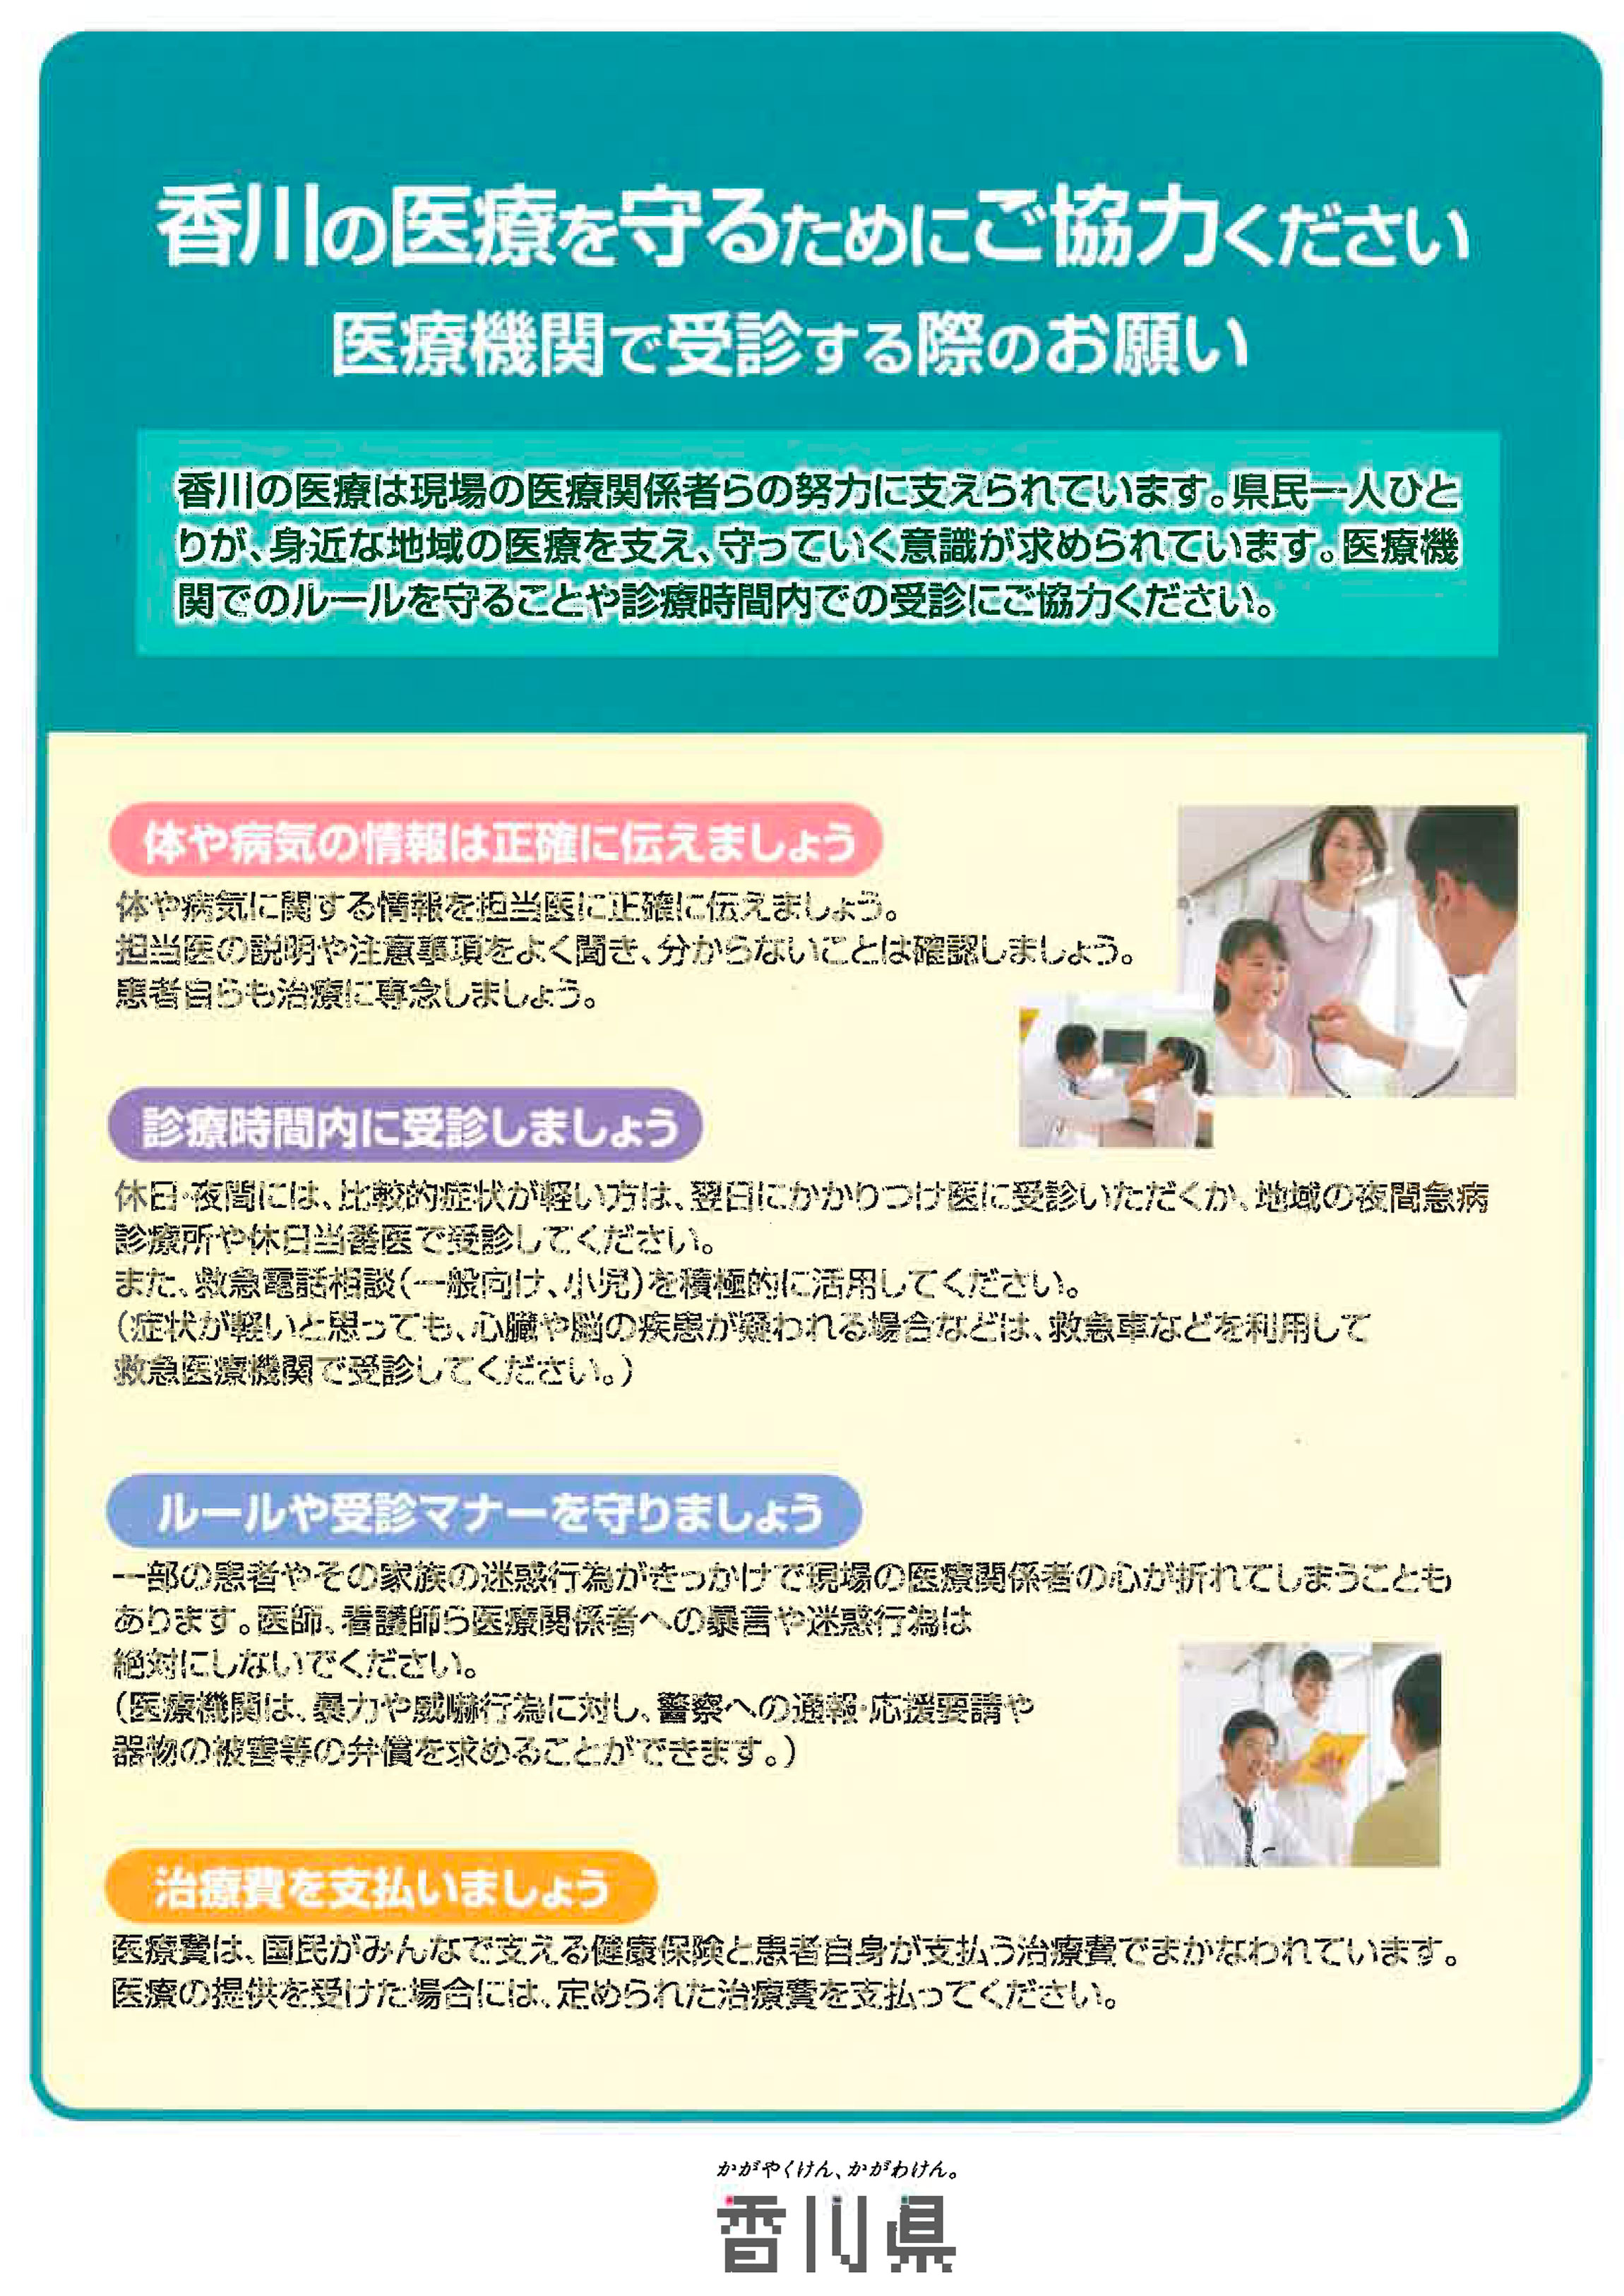 香川県公式サイトより、医療機関で受診する際のお願い